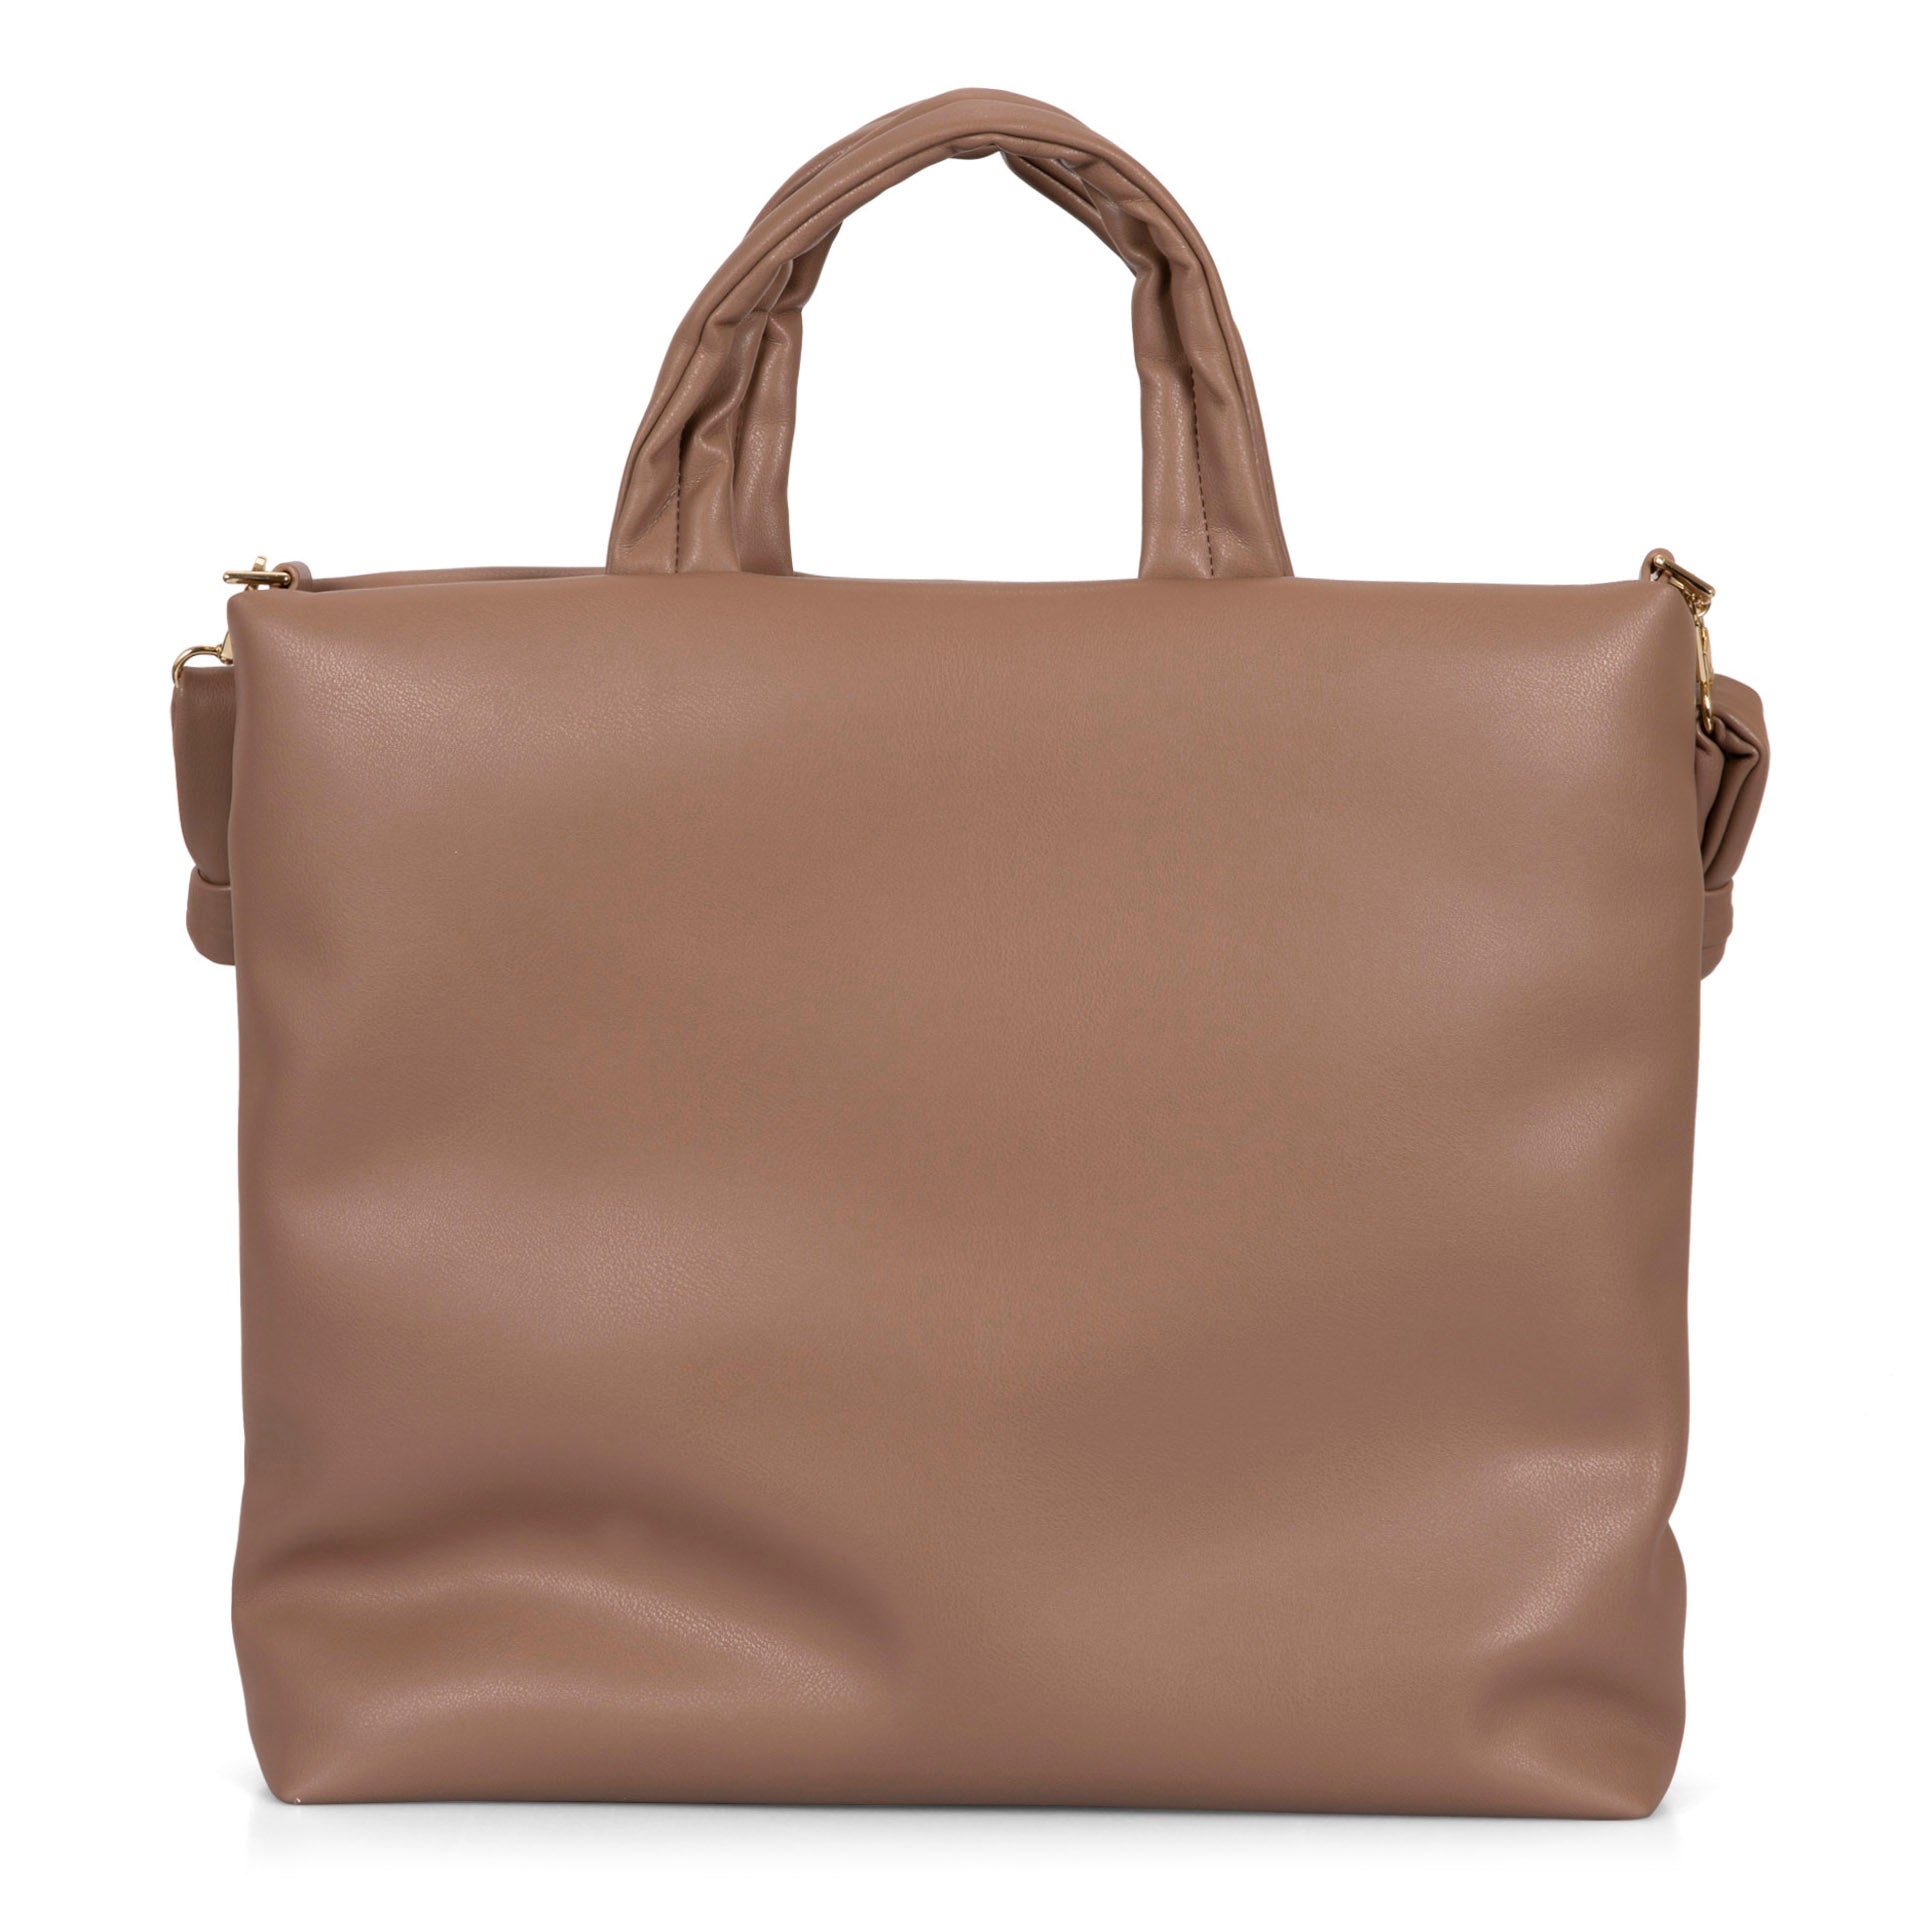 Handbags & Purses | Best Buy Canada